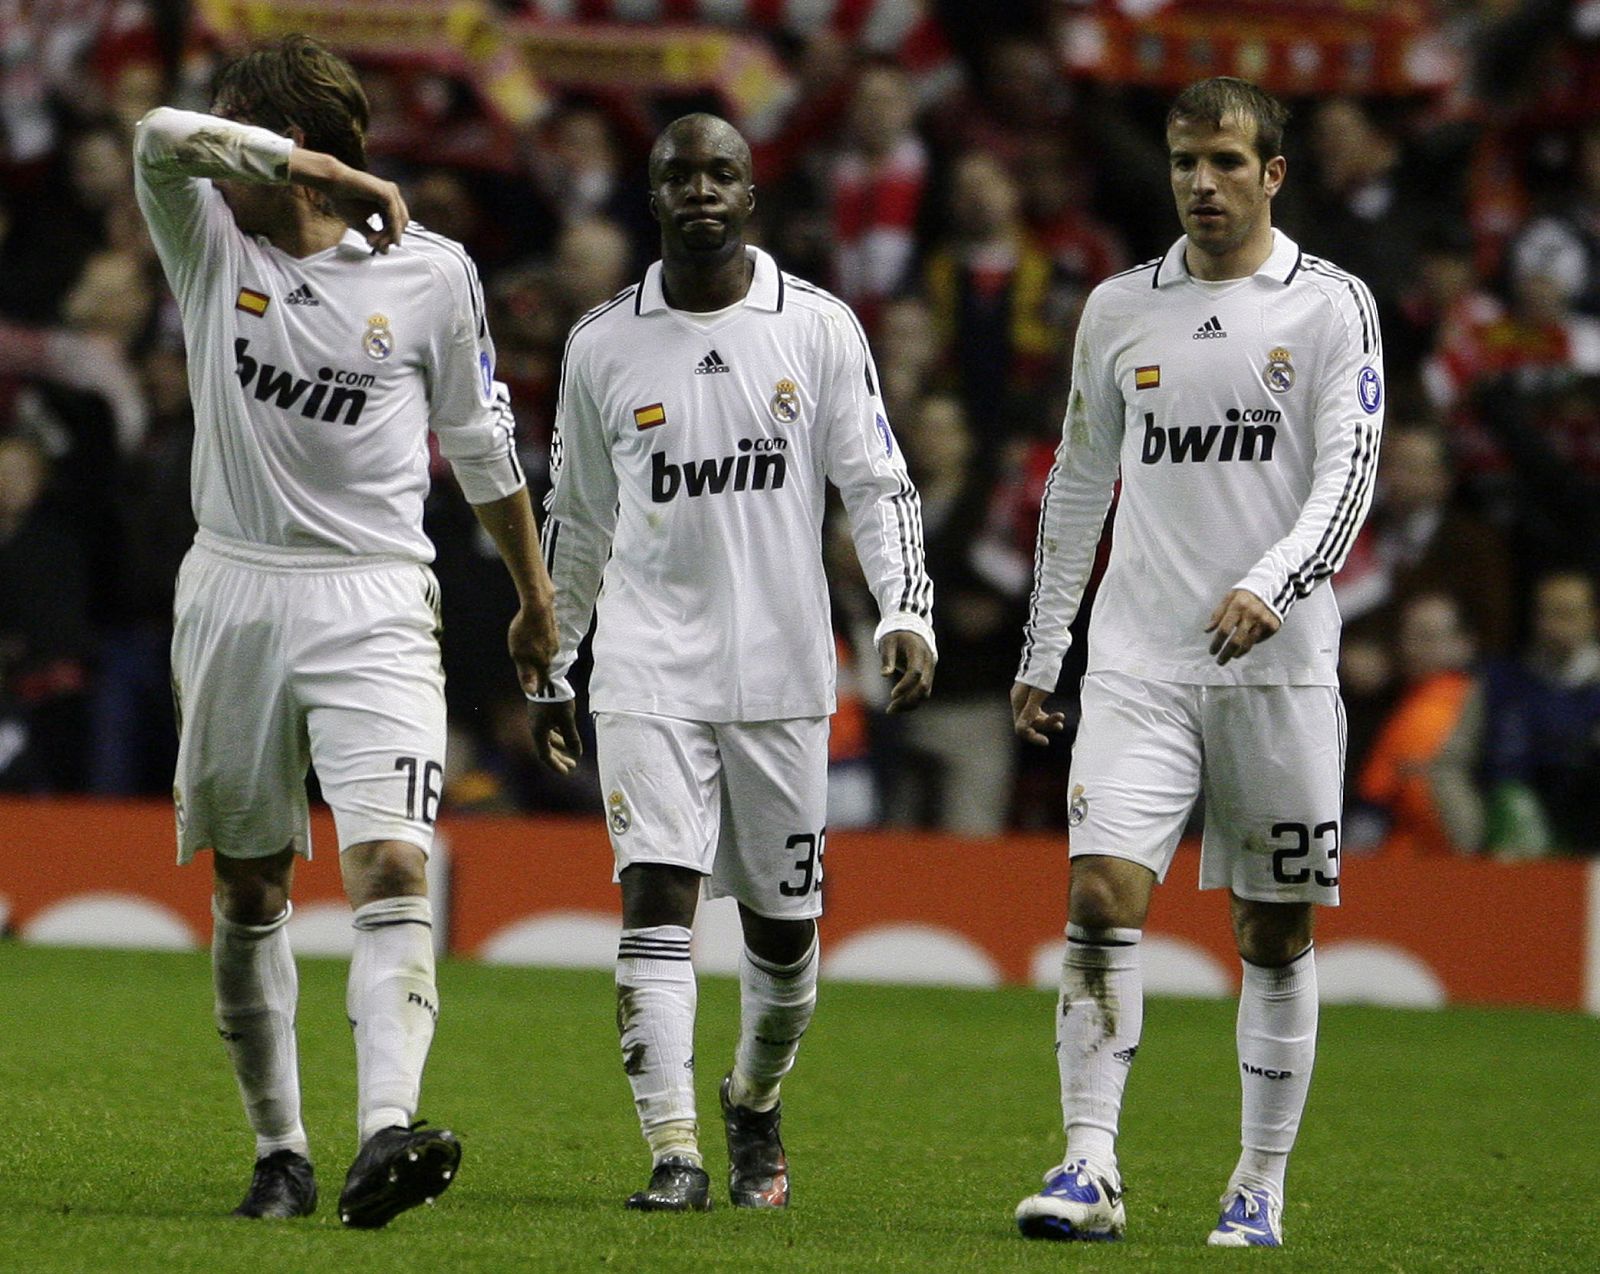 Ninguno de los jugadores del Madrid, a excepción de Casillas, tuvo una actuación brillante en Anfield.